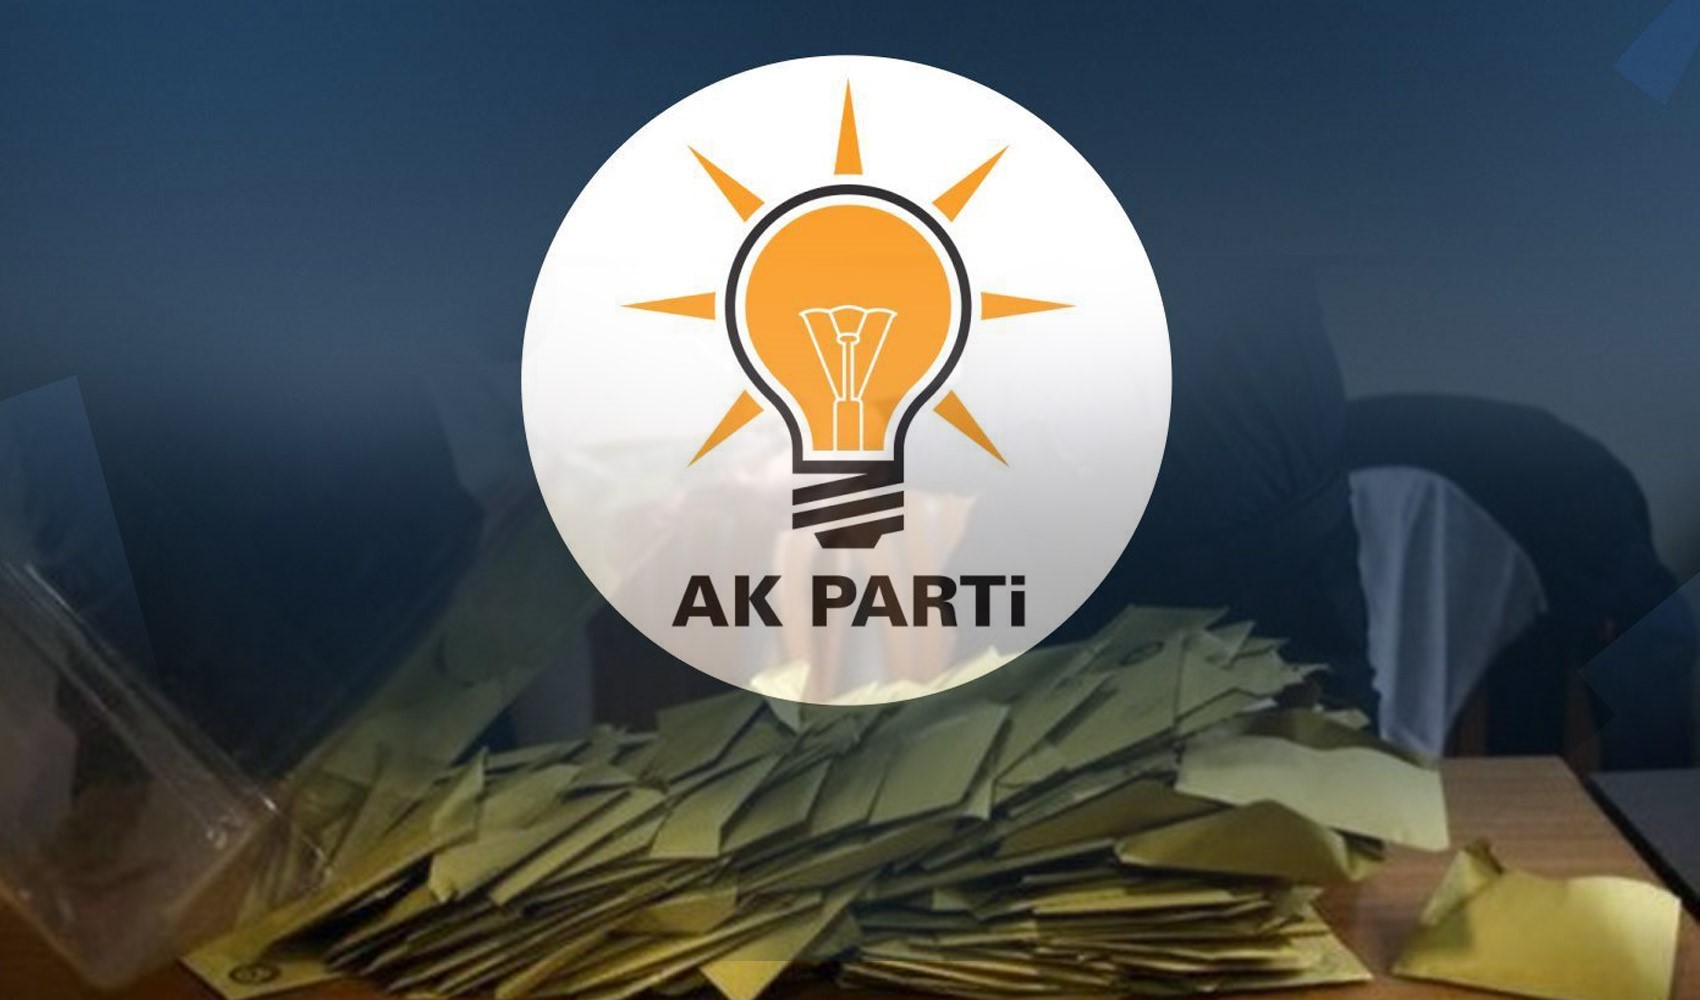 AKP'den Gaziosmanpaşa ve Beykoz seçim sonuçlarına ilişkin açıklama. 'Türkiye hukuk devletidir'